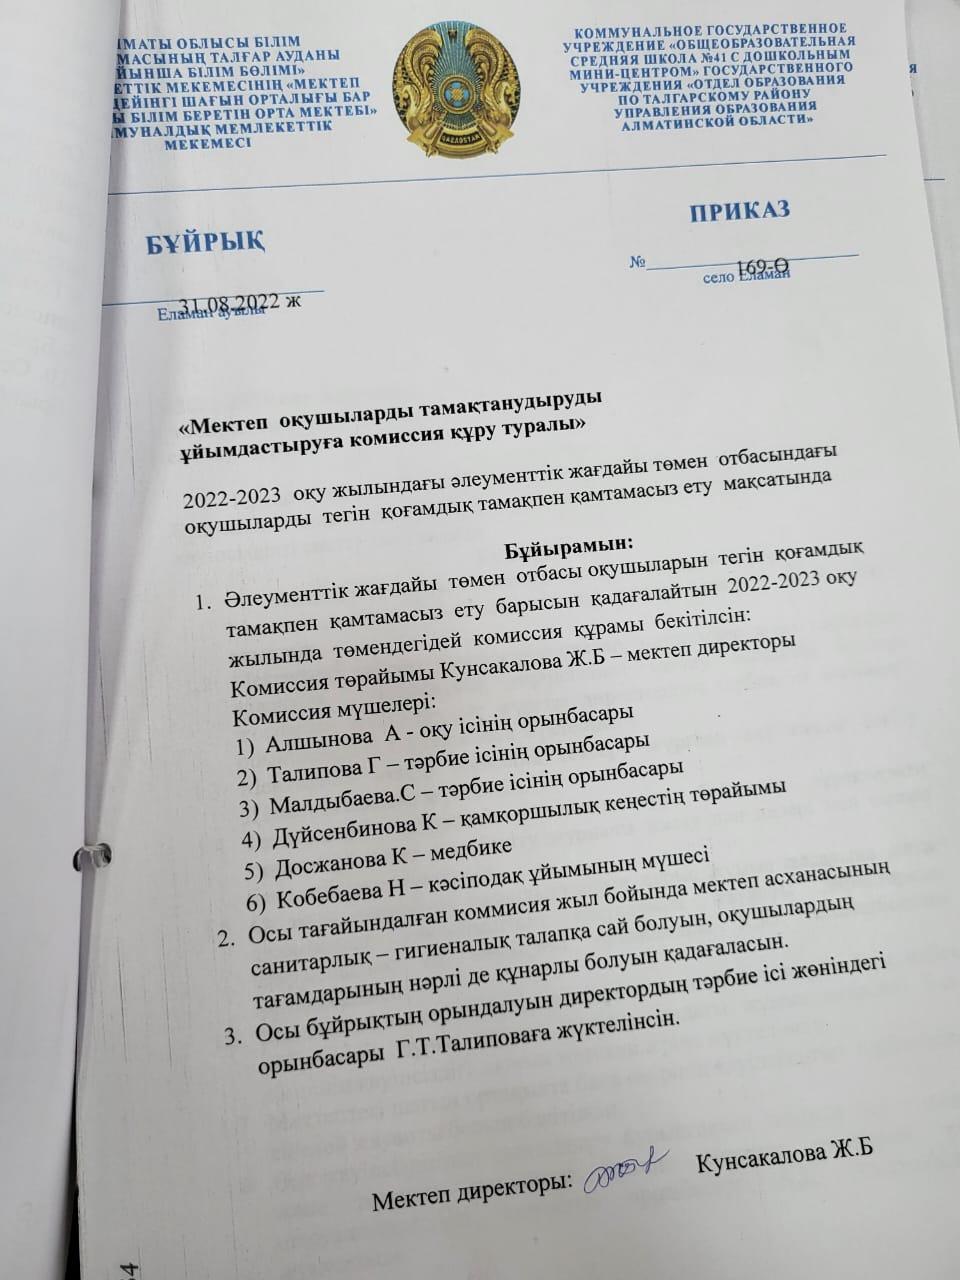 Тамақ сапасын тексеру бойынша комиссия құрамы  01.09.2022 ж